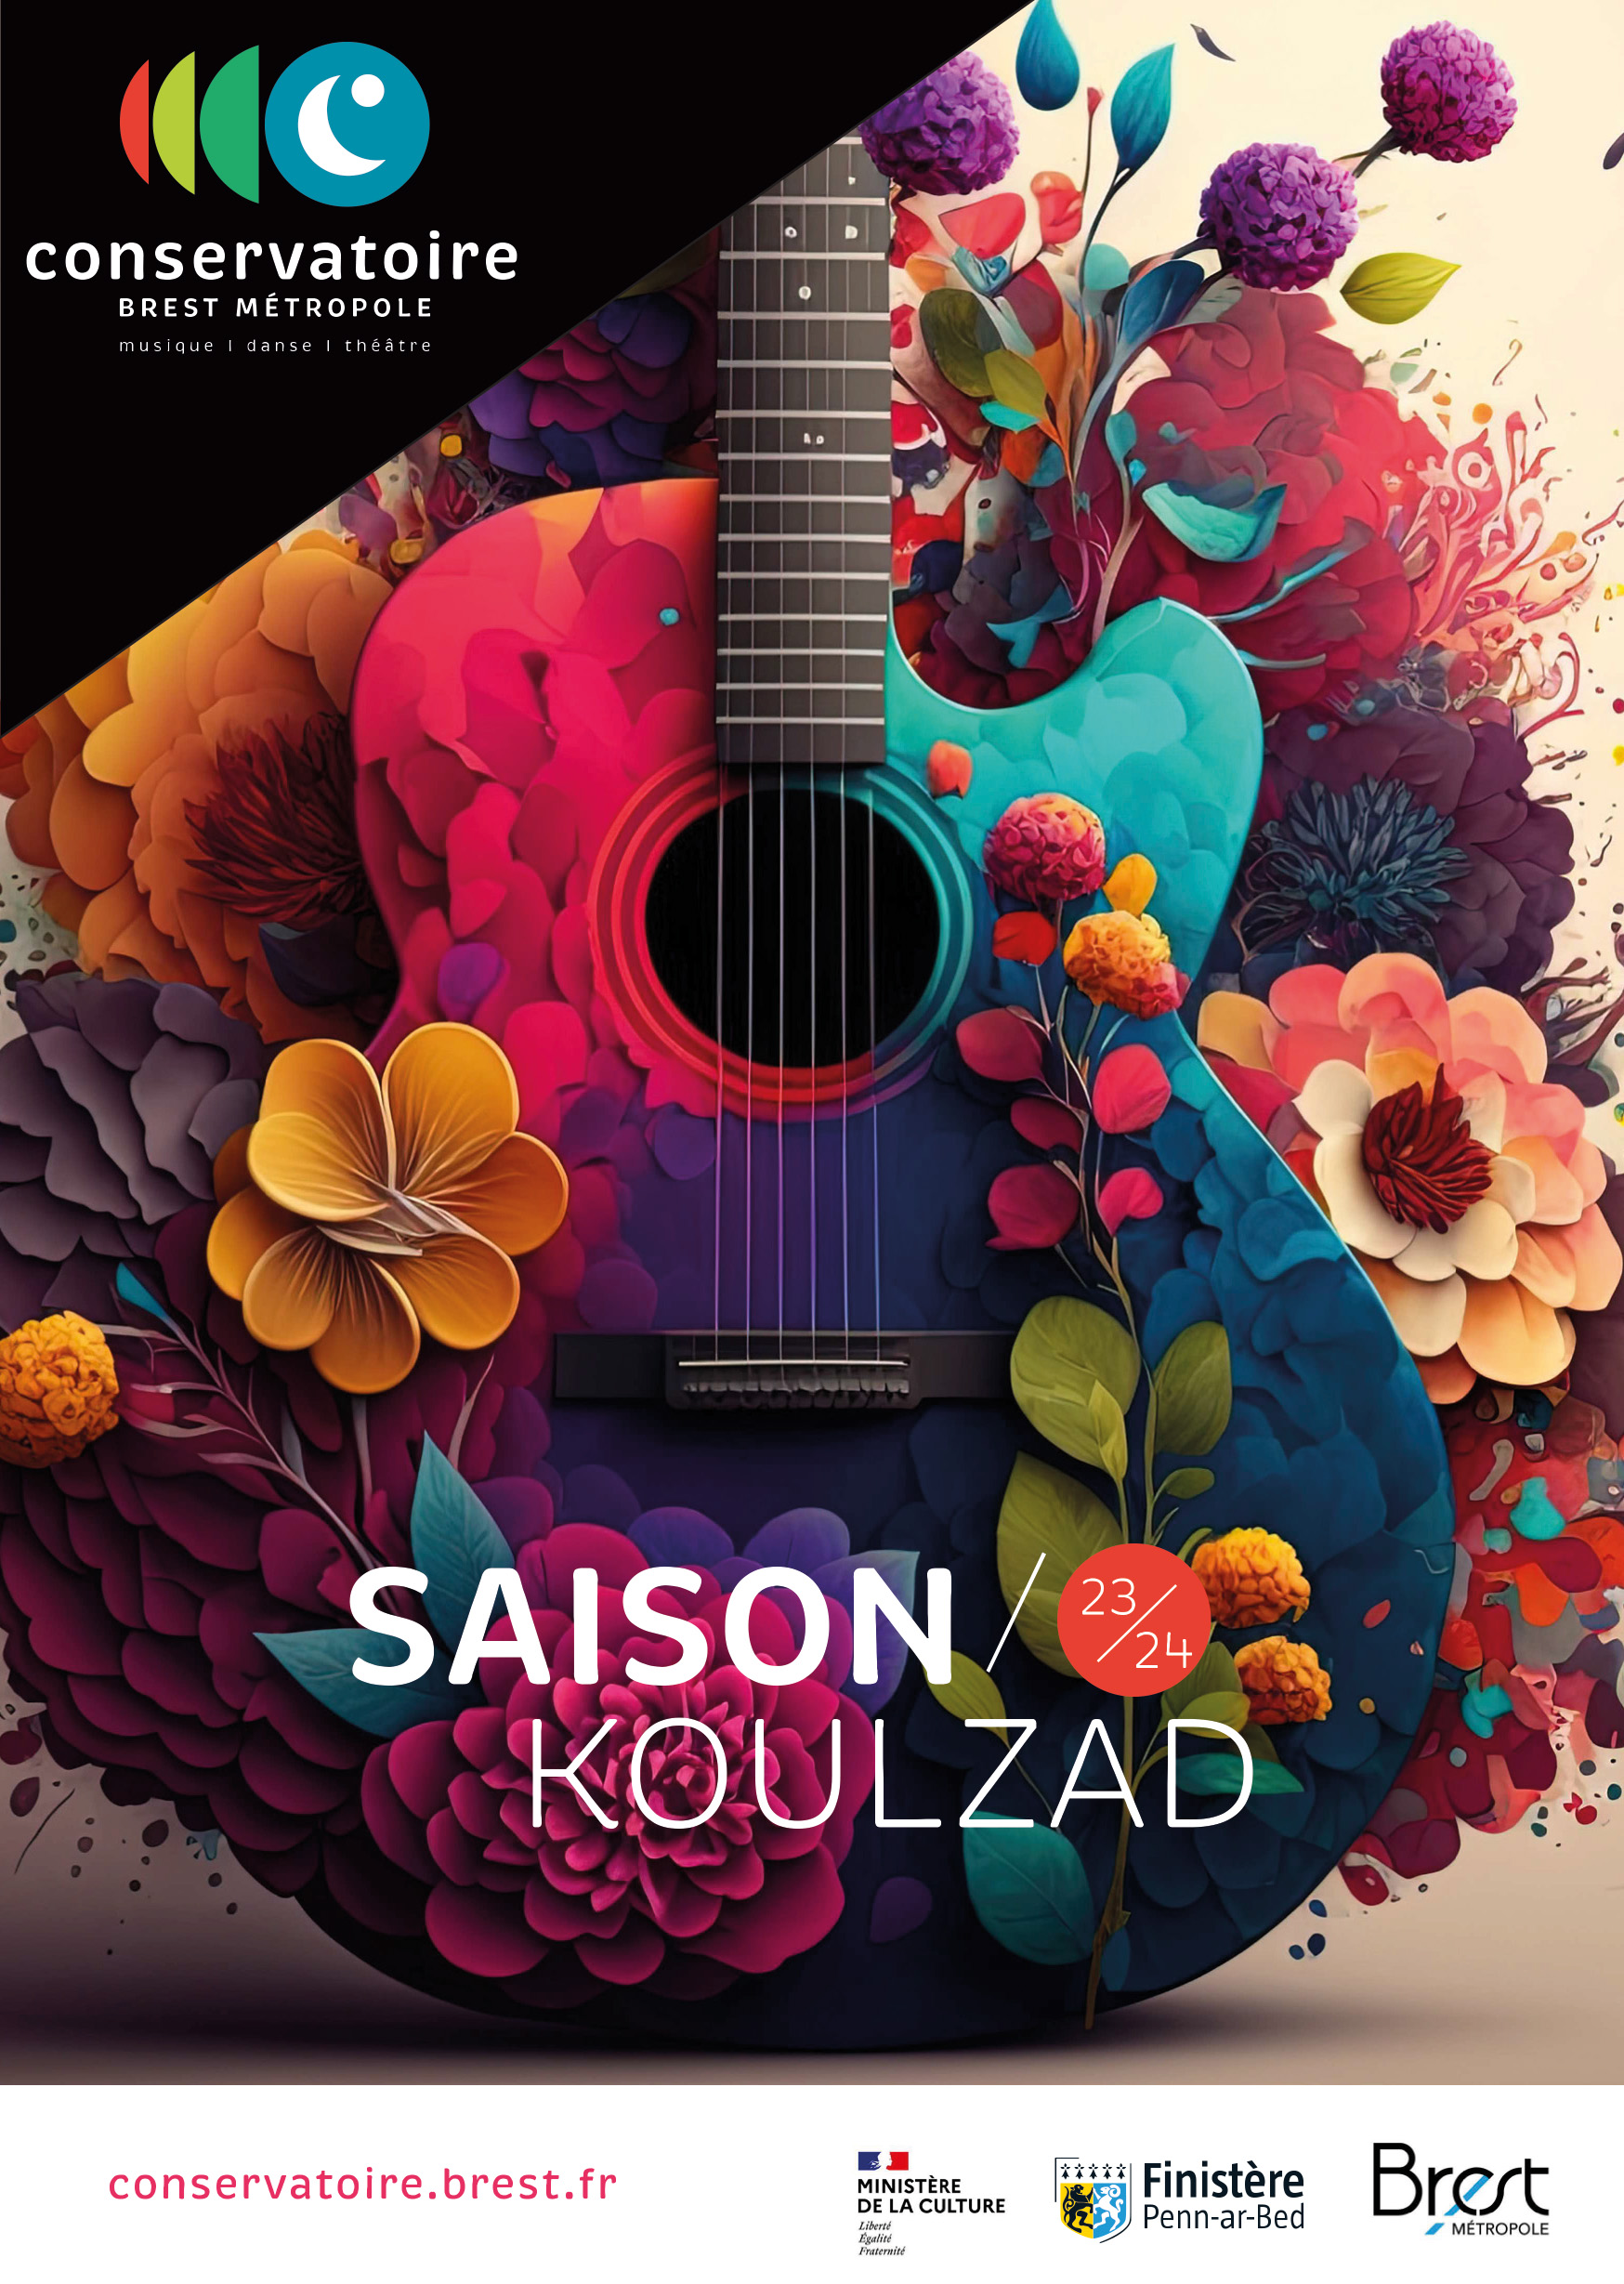 Couverture de la brochure de saison 23/24 du conservatoire représentation une illustration de guitare au milieu de fleurs